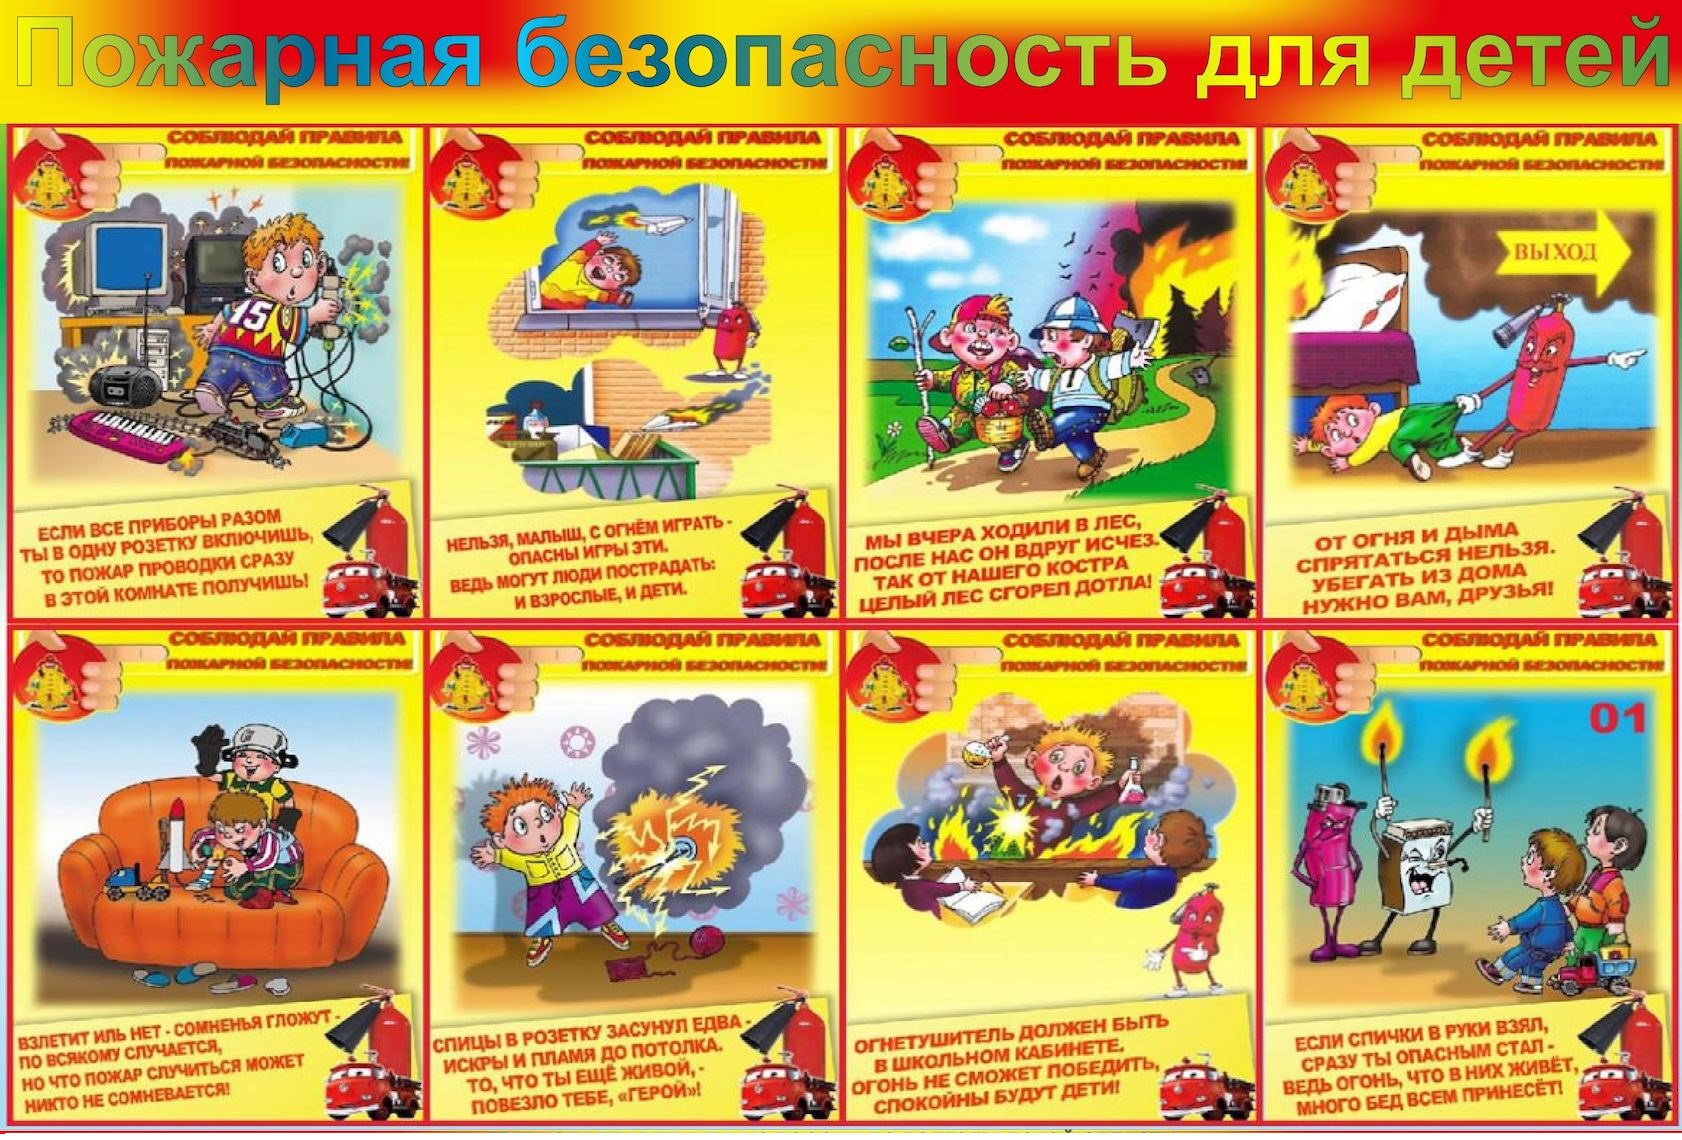 Статья 37 о пожарной безопасности. Памятка правил пожарной безопасности для детей. ТБ по пожарной безопасности для детей. Правила пожарной безопасноят.